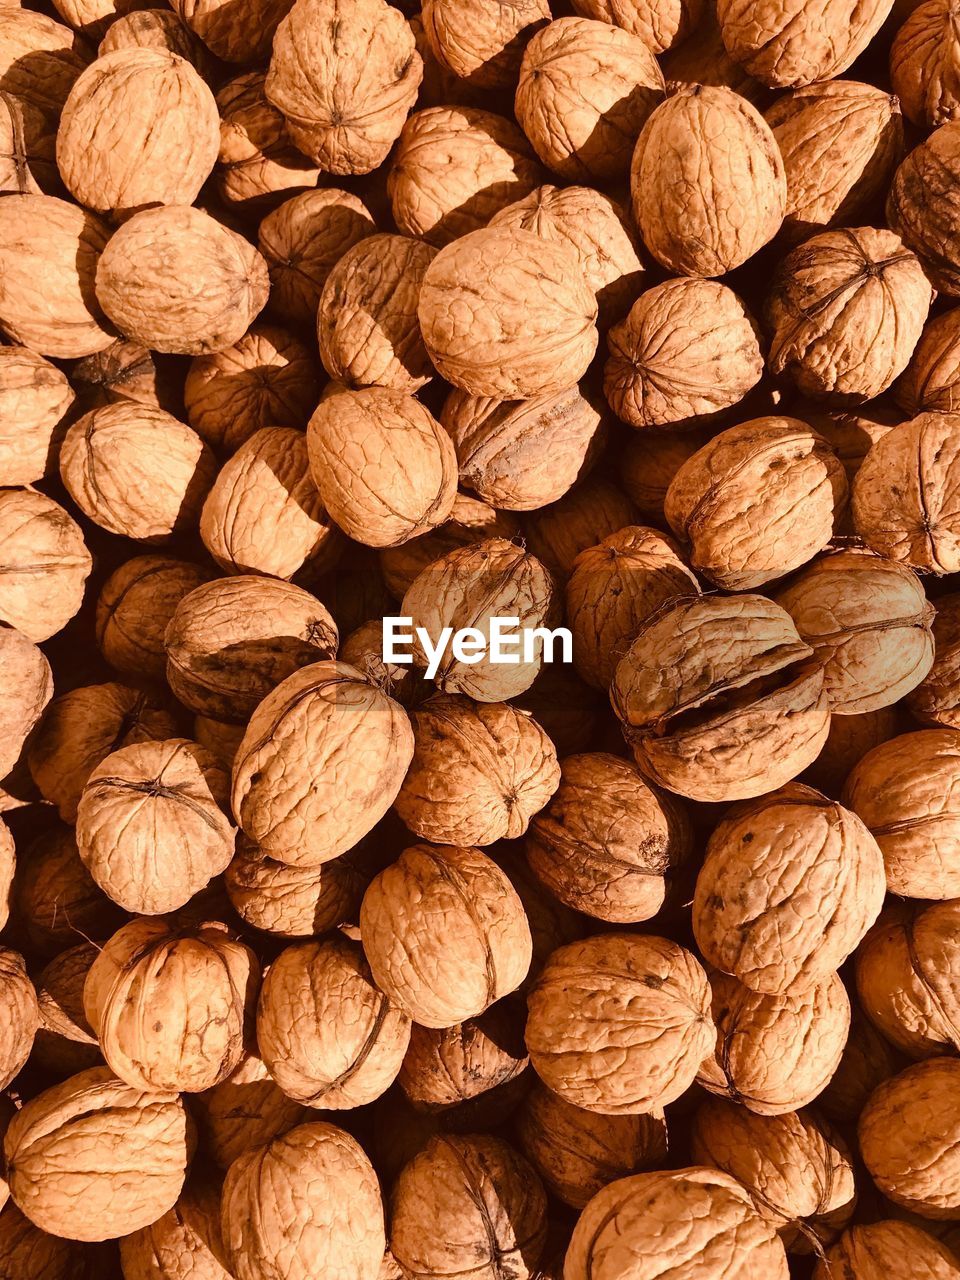 Full frame shot of walnut